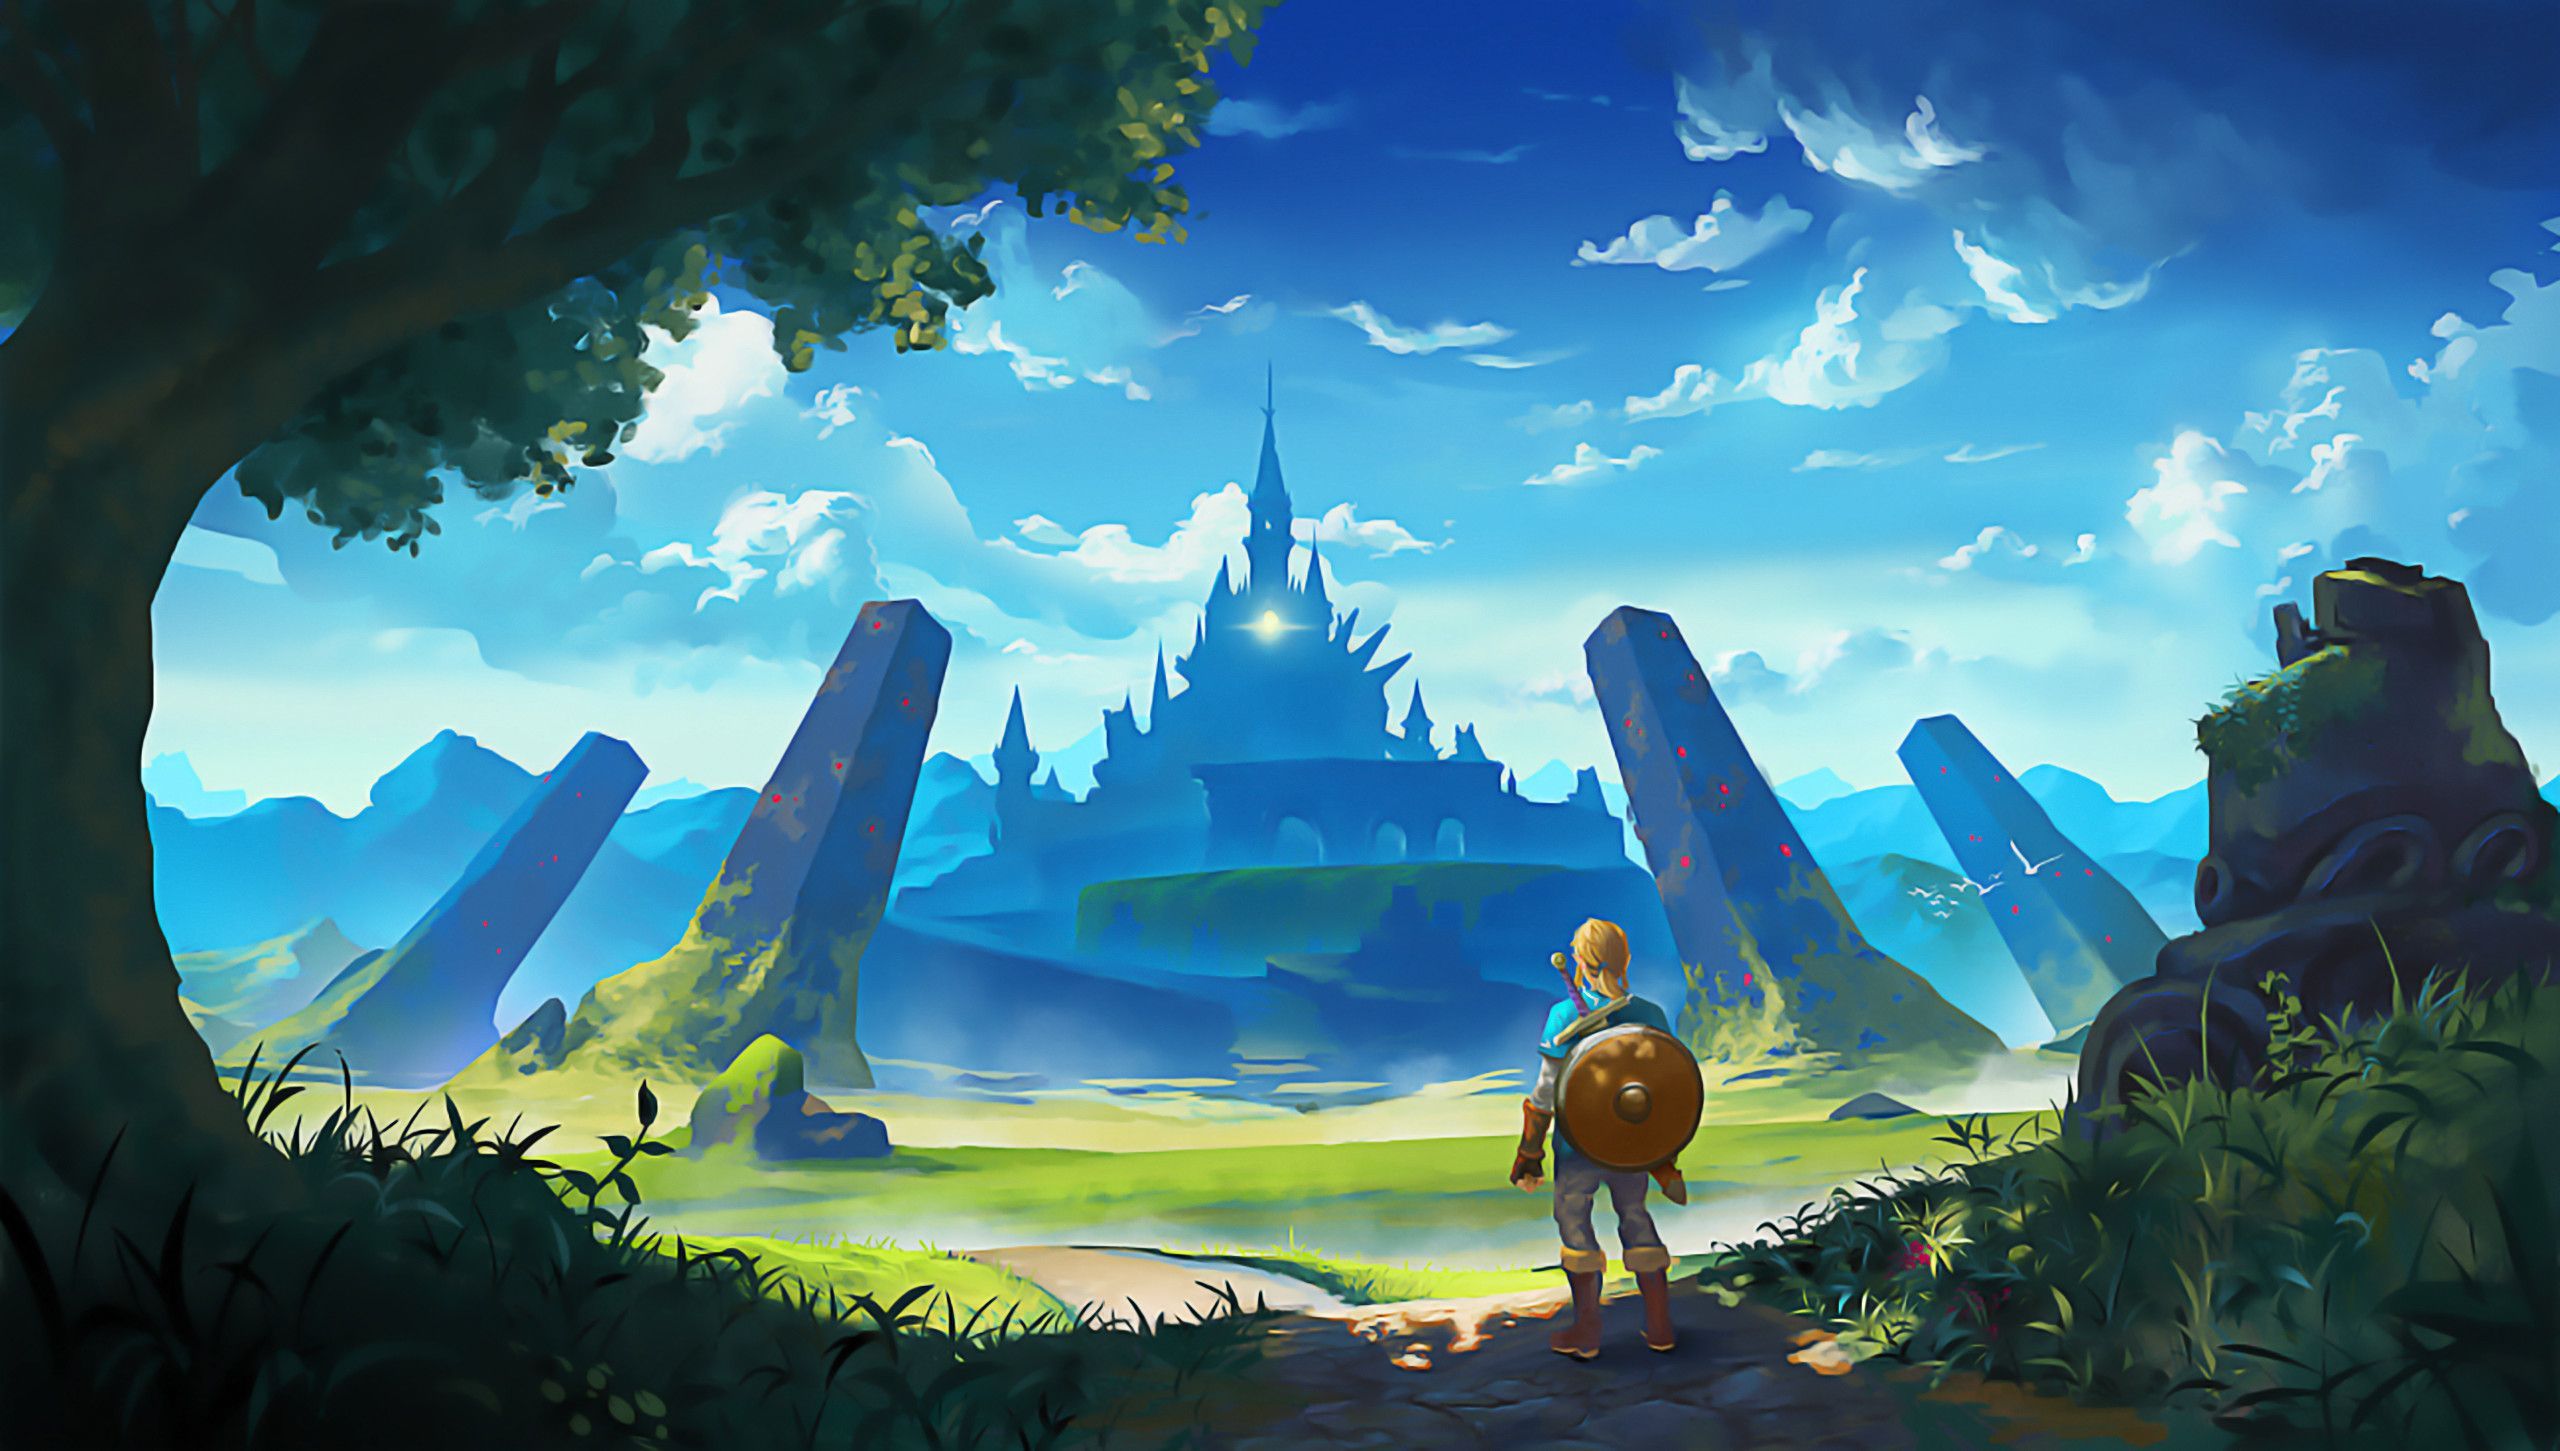 Legend of Zelda Wallpaper Free Legend of Zelda Background